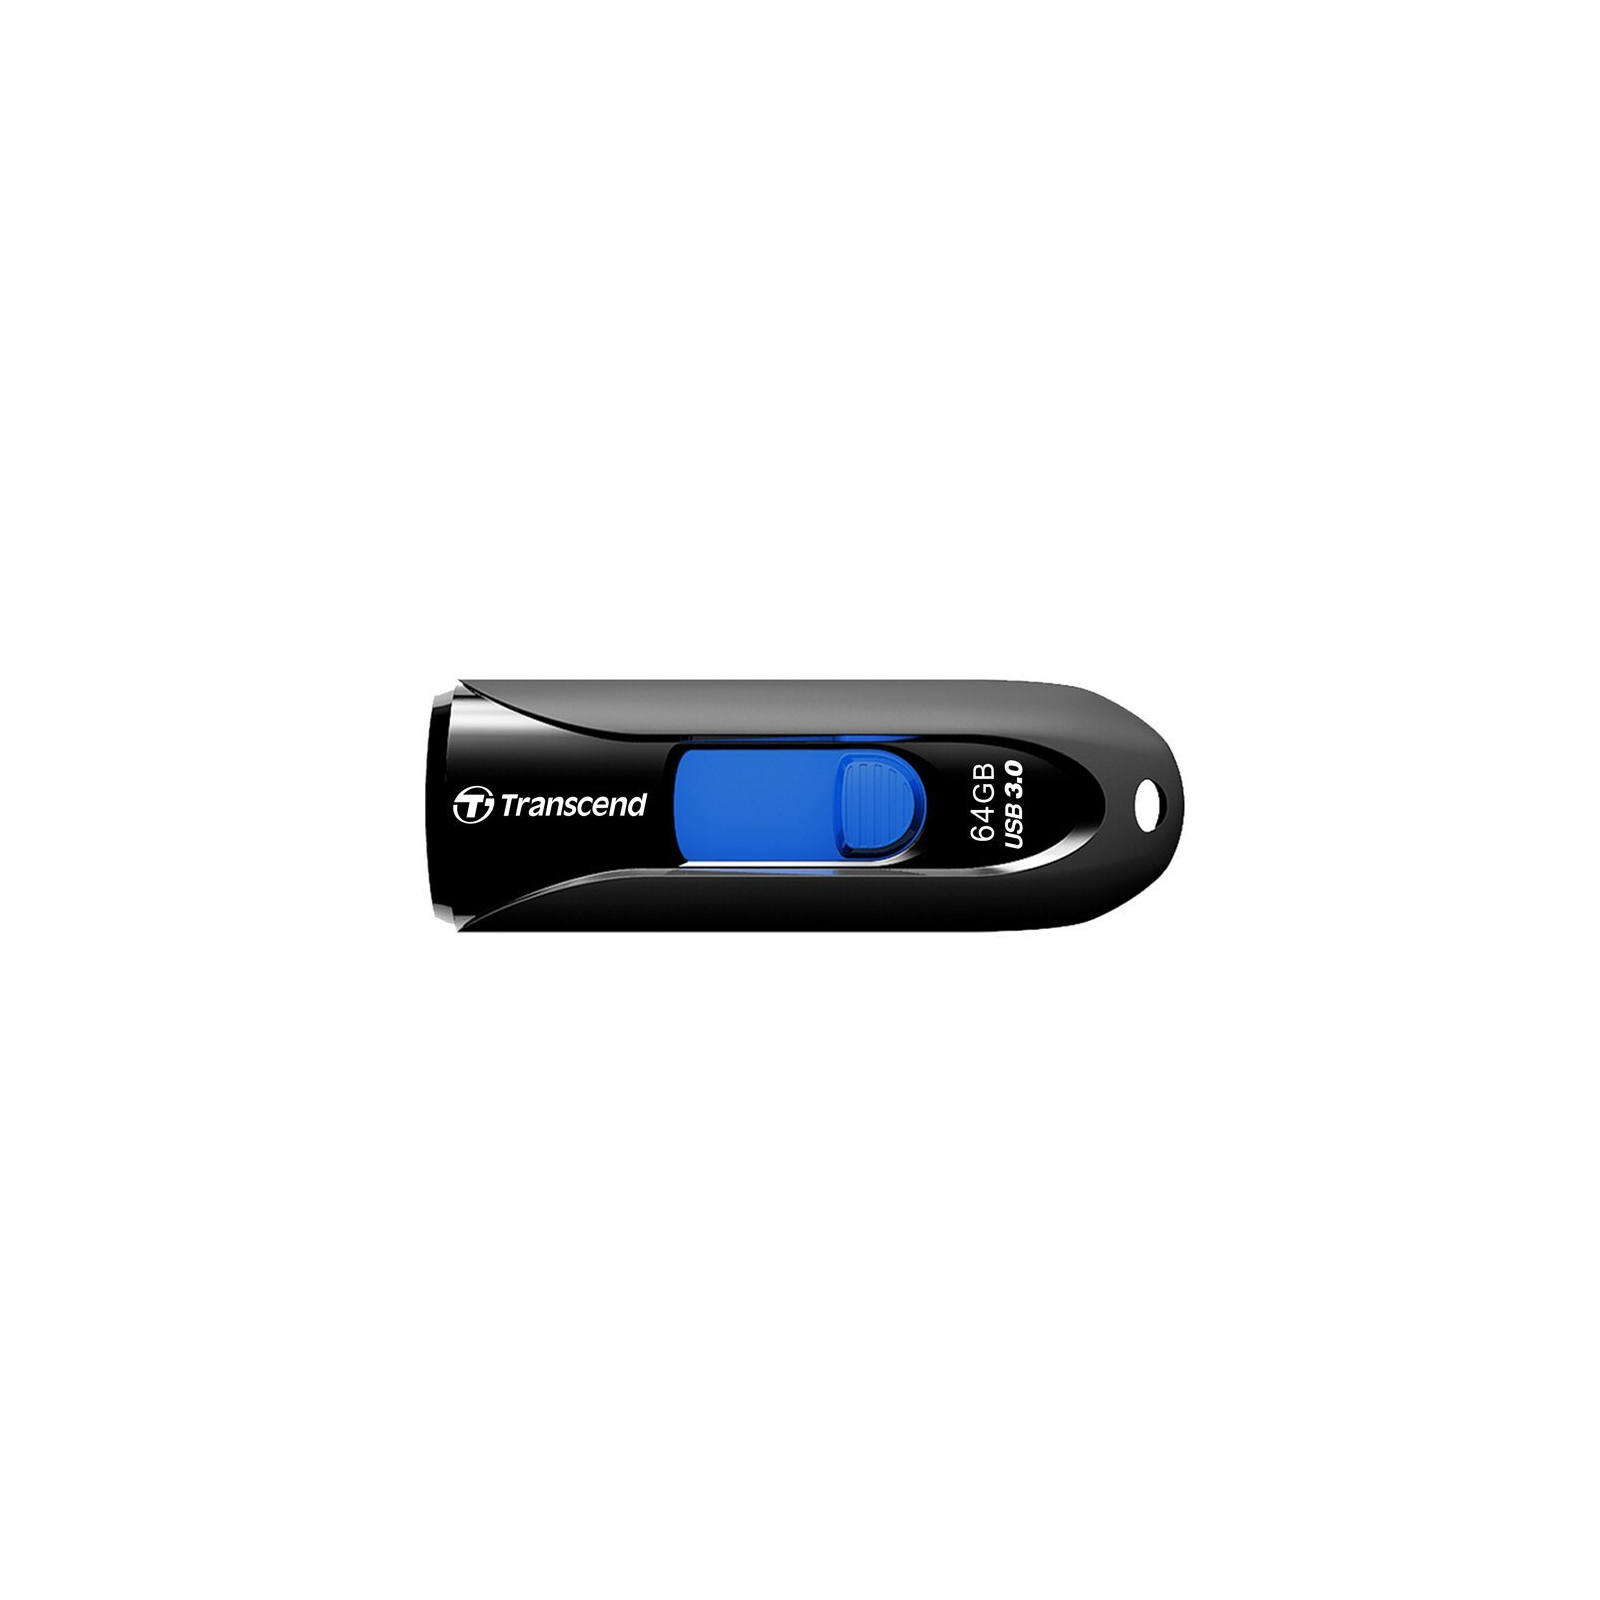 USB флеш накопитель Transcend 256GB JetFlash 790 Black USB 3.0 (TS256GJF790K)